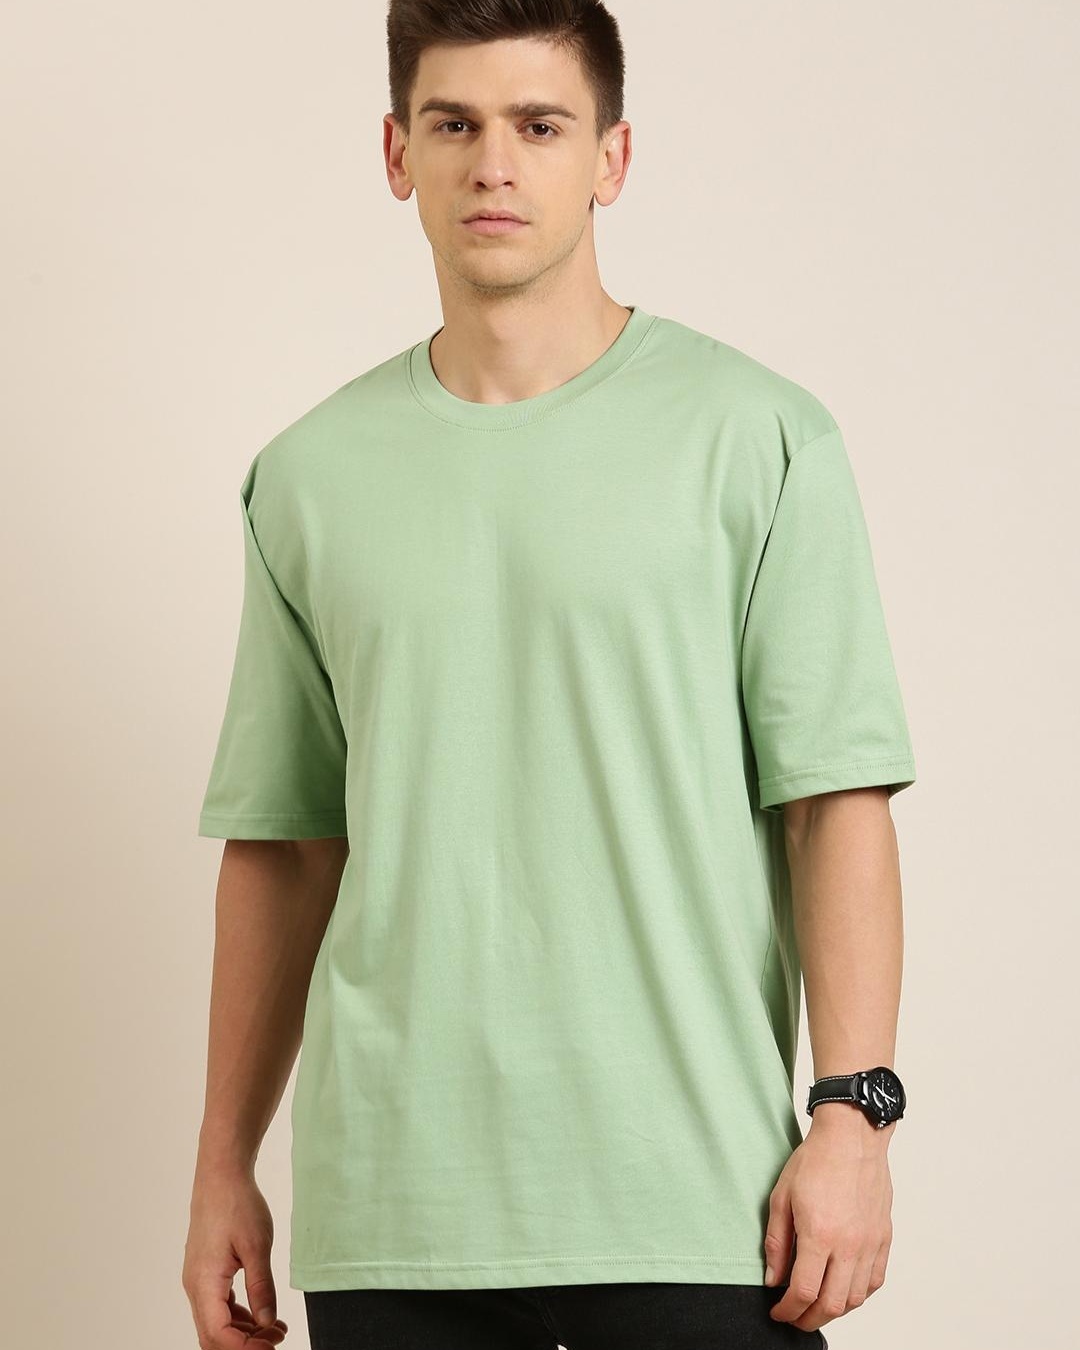 Buy Men's Green Oversized T-shirt Online at Bewakoof